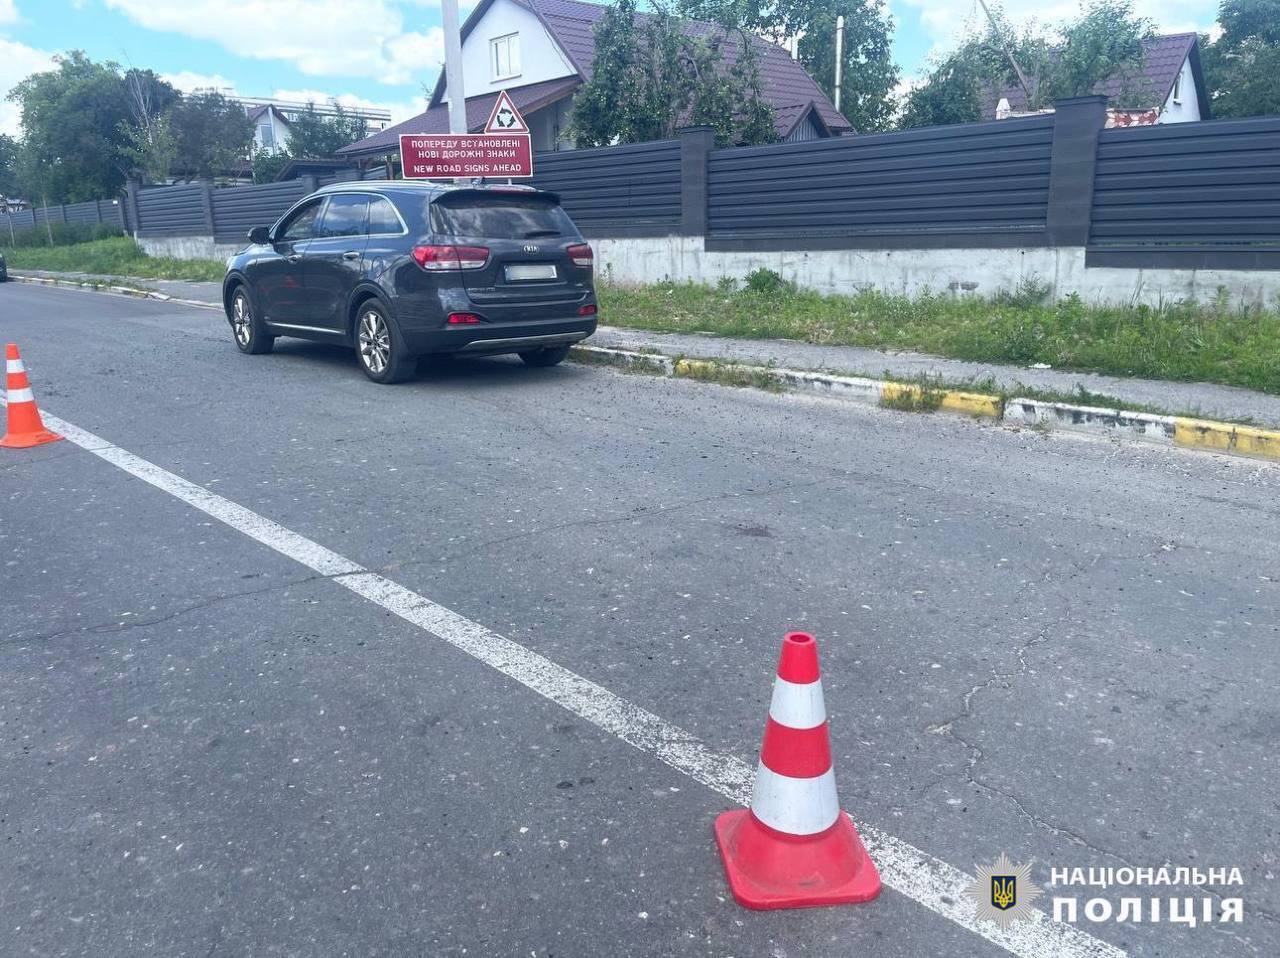 Вимагав у водія везти до кордону із Білоруссю: під Києвом пасажир підірвав у машині гранату. Усі подробиці, фото і відео